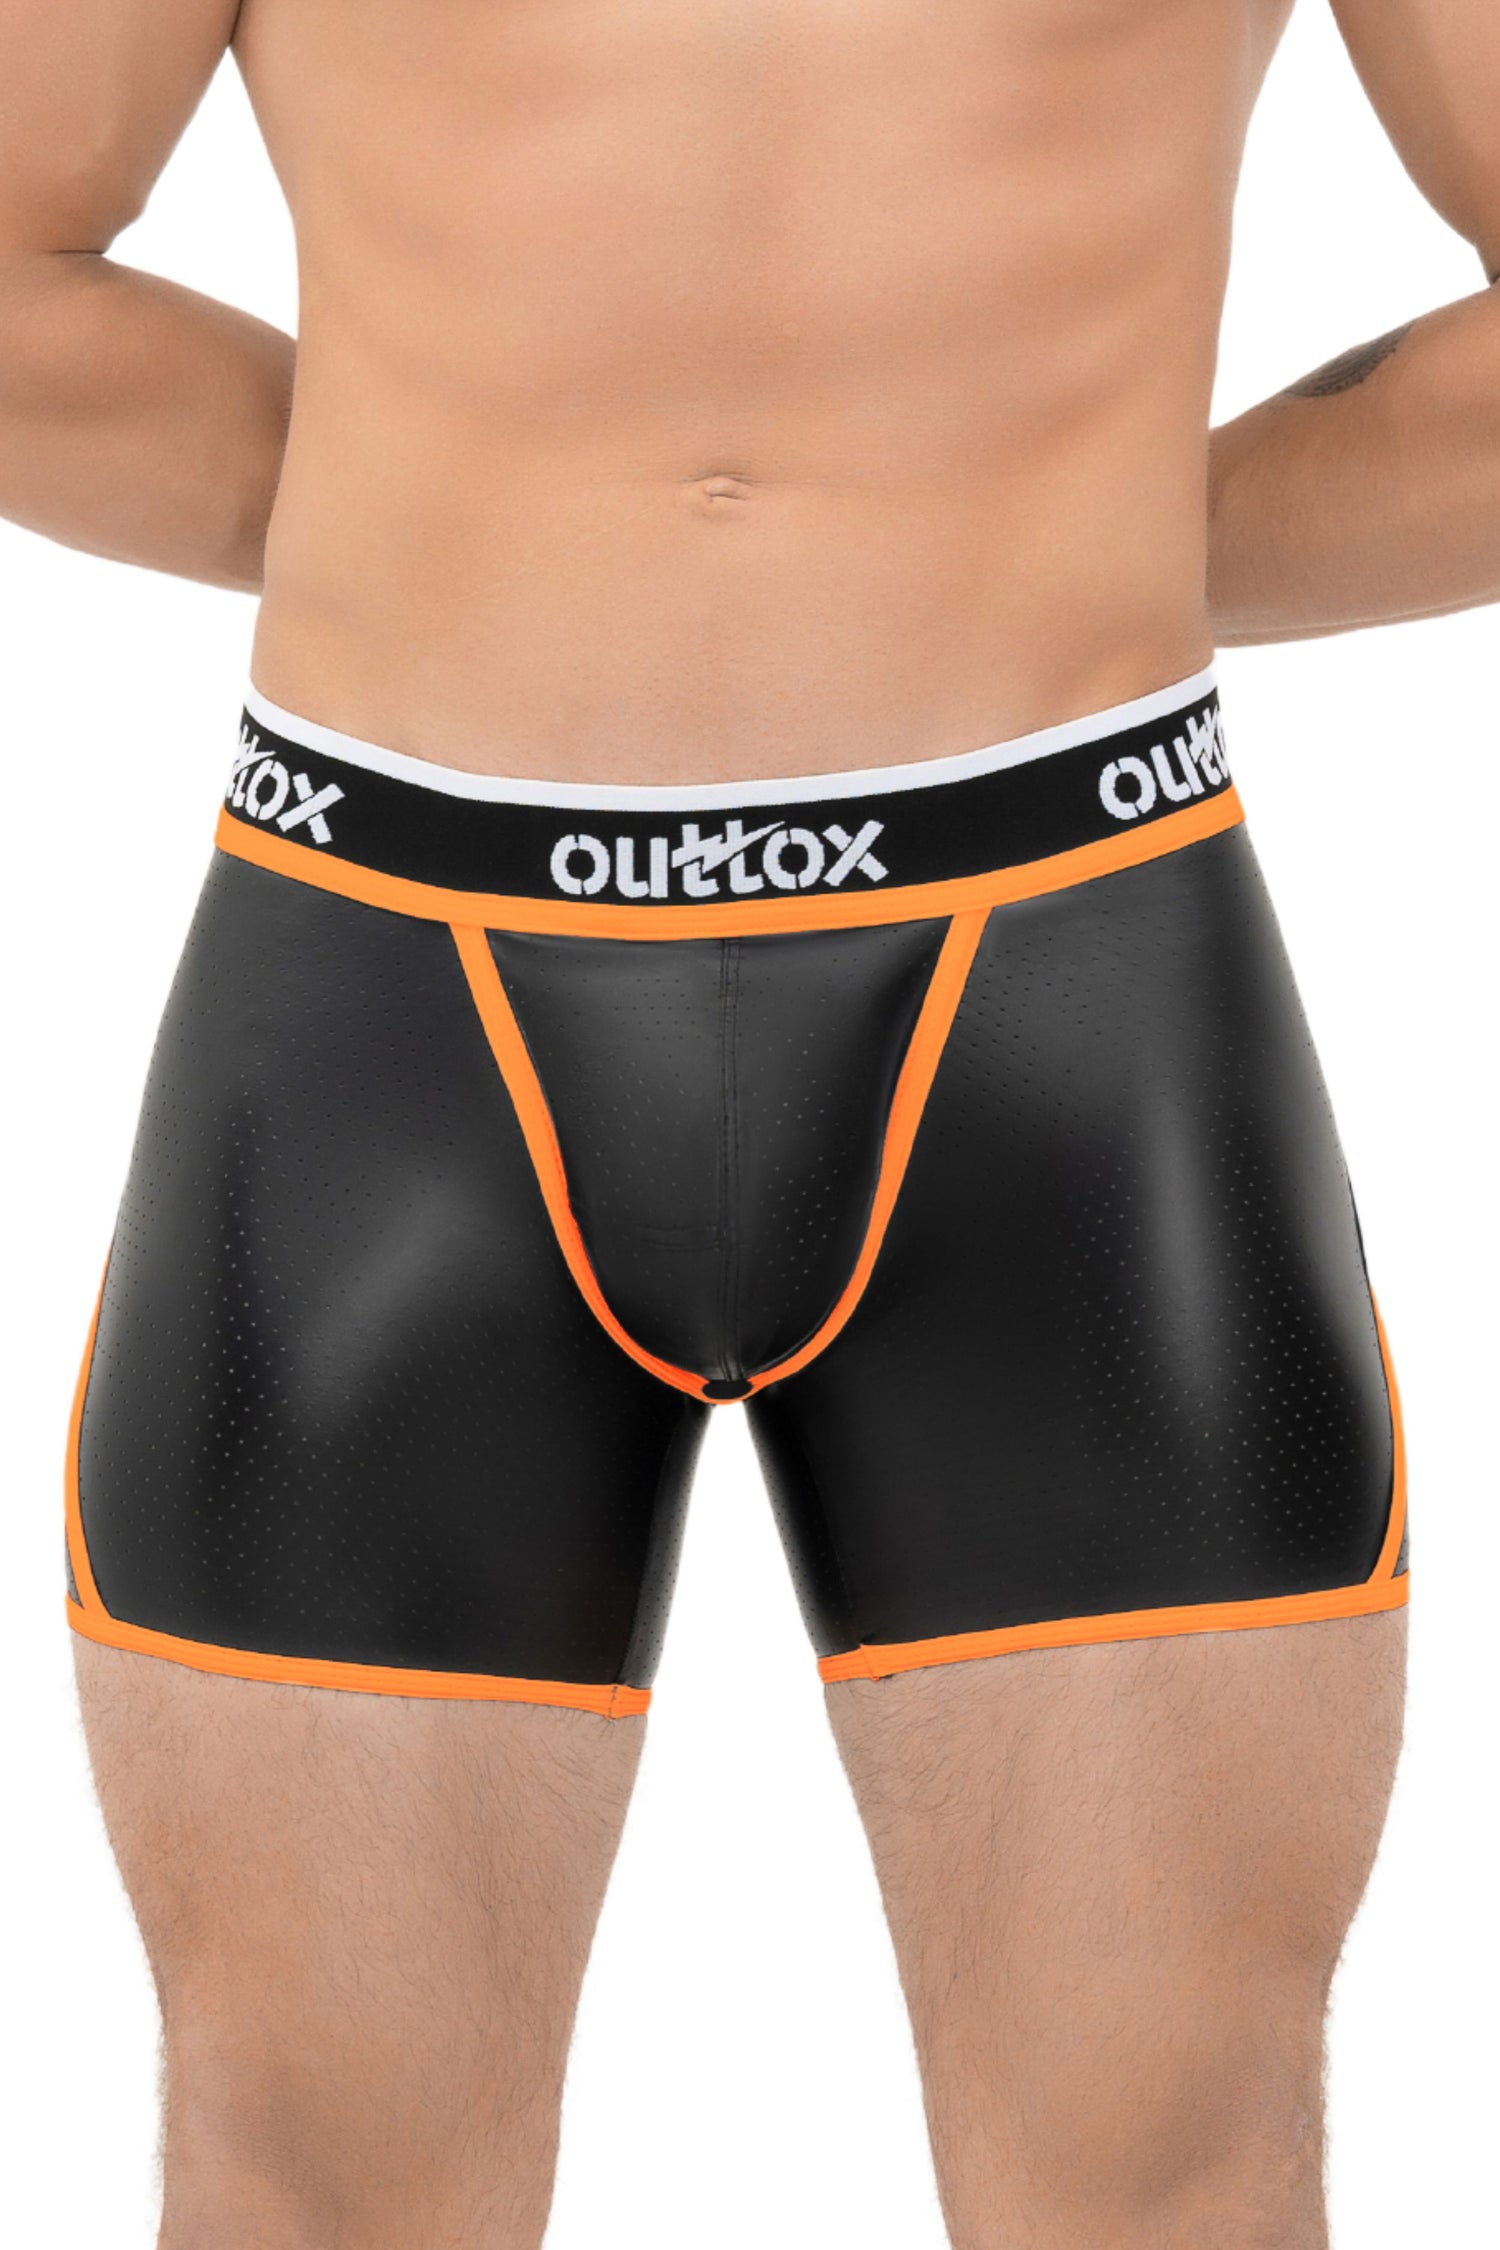 Outtox. Open achtershort met drukknoopsluiting. Zwart+oranje